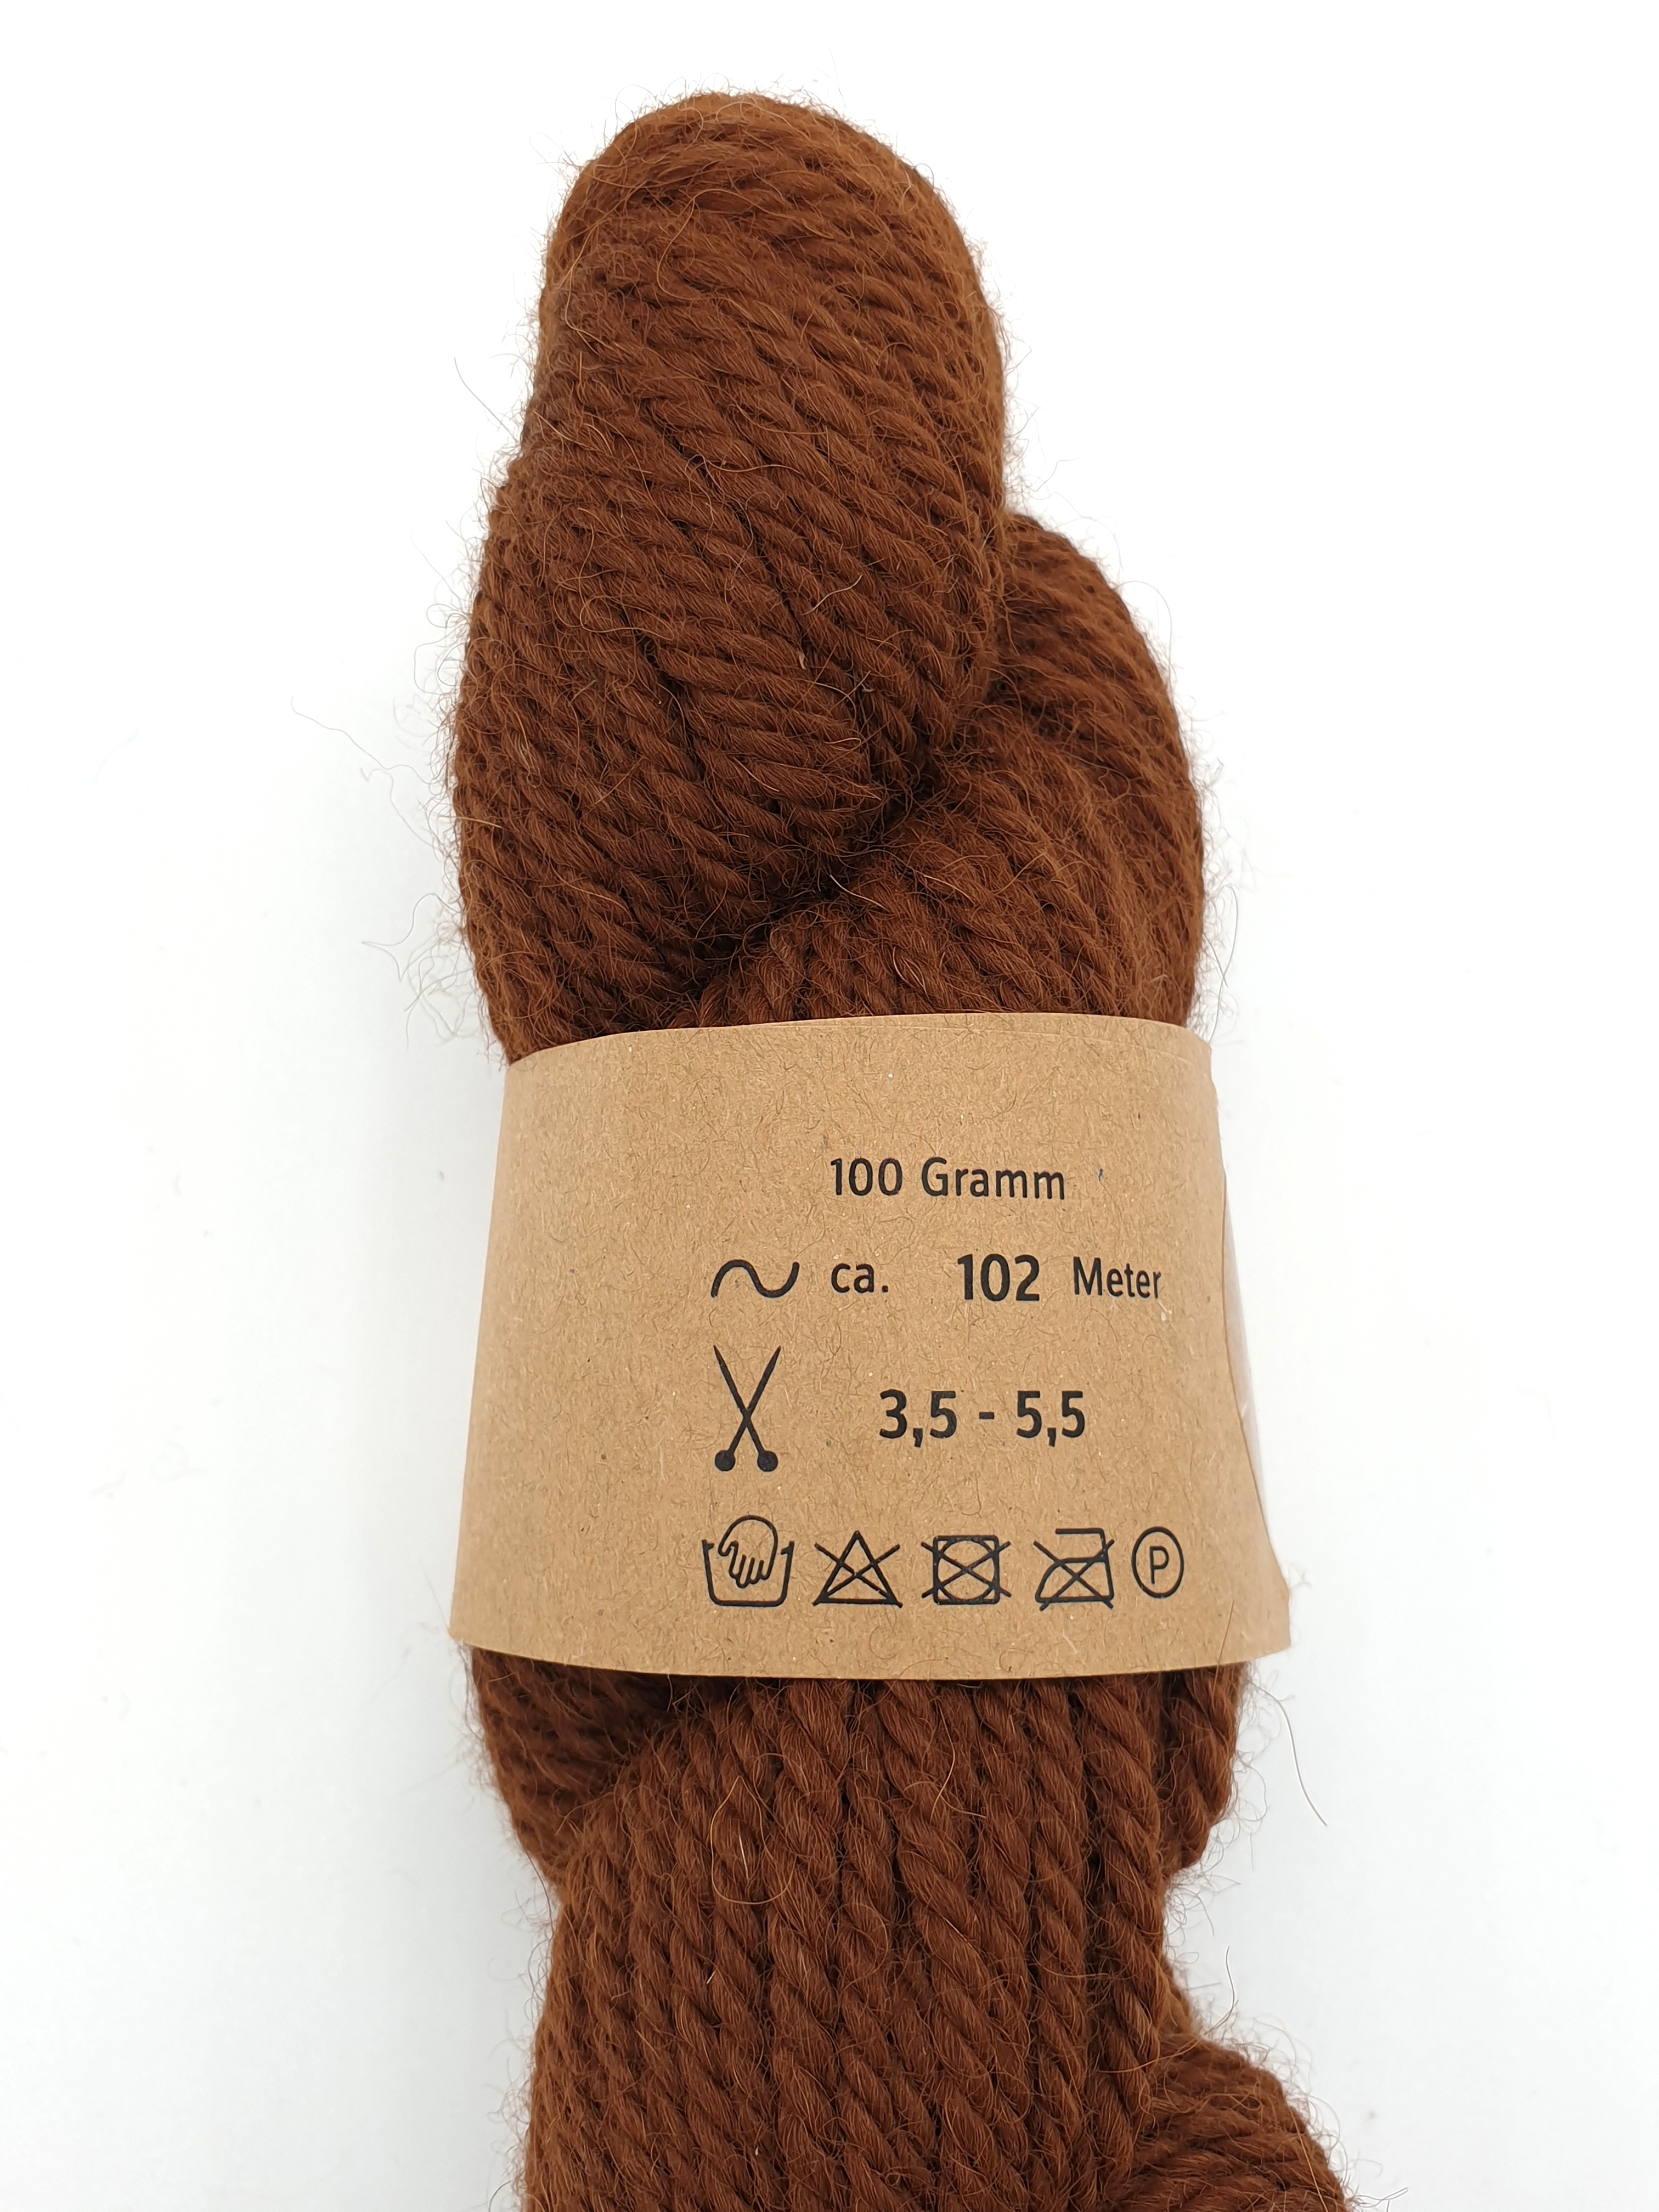 100g Baby-Alpaka-Wolle in verschiedenen Farben